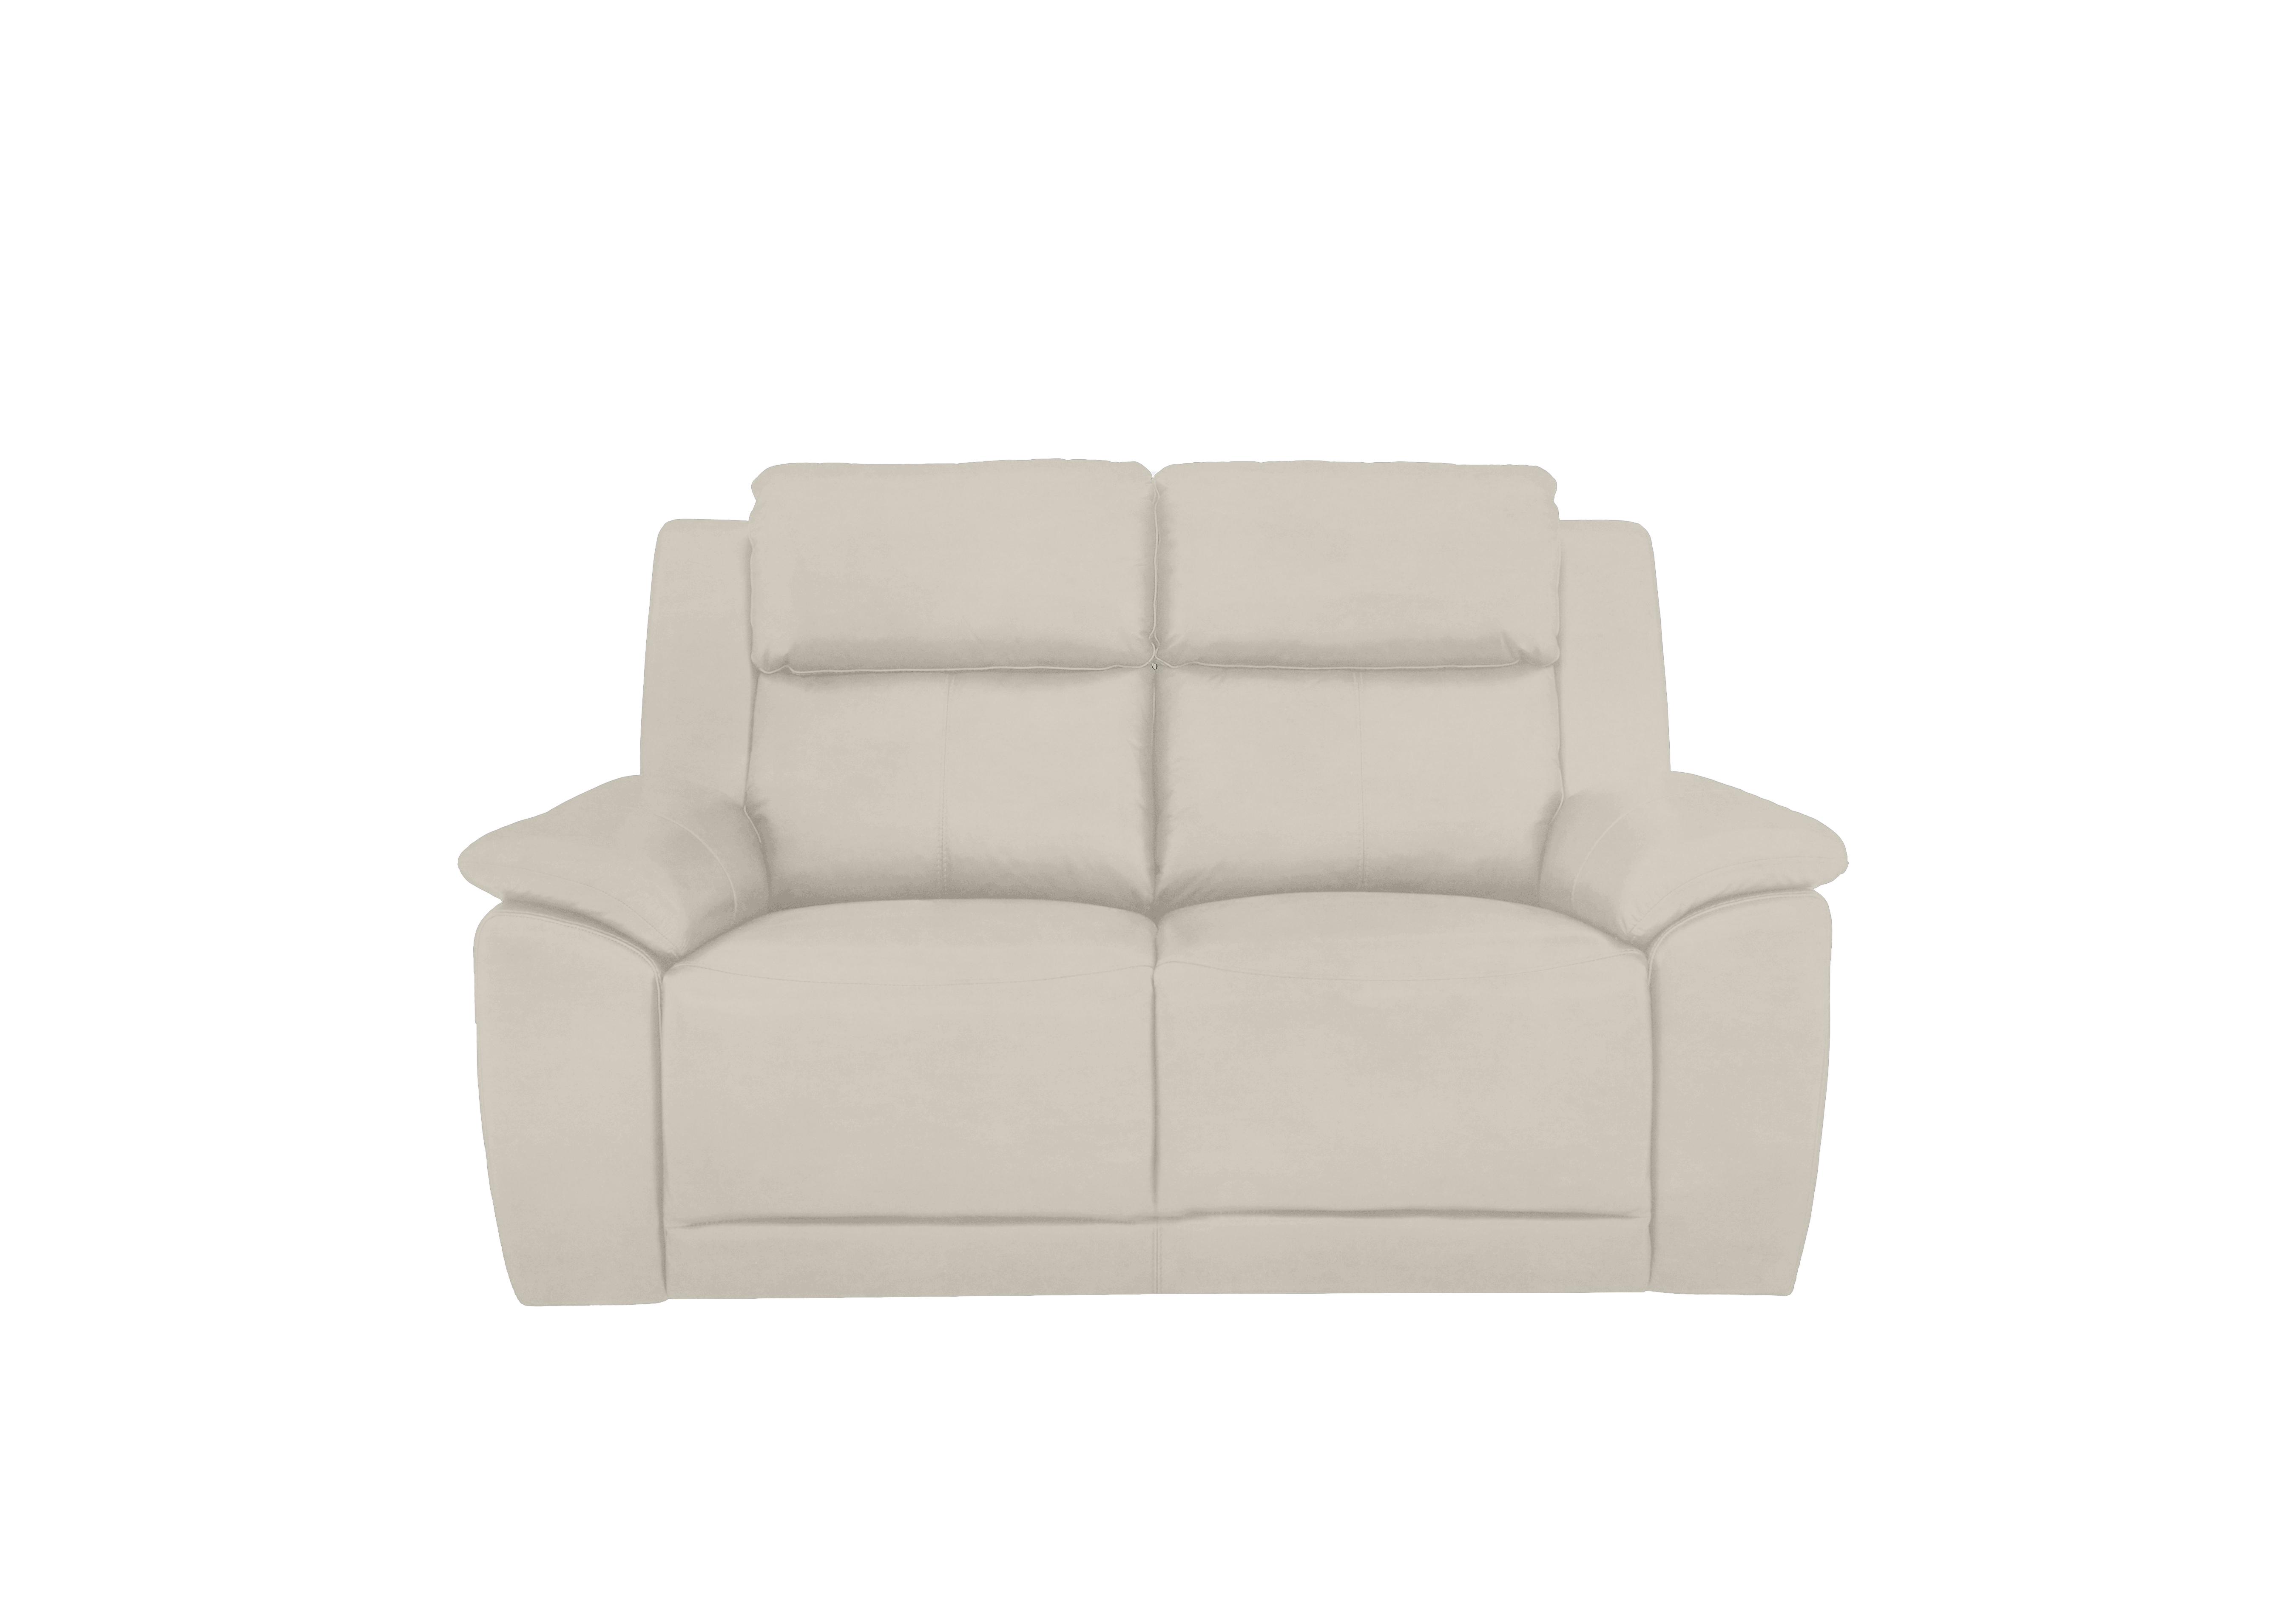 Utah 2 Seater Fabric Sofa in Velvet White Vv-0307 on Furniture Village